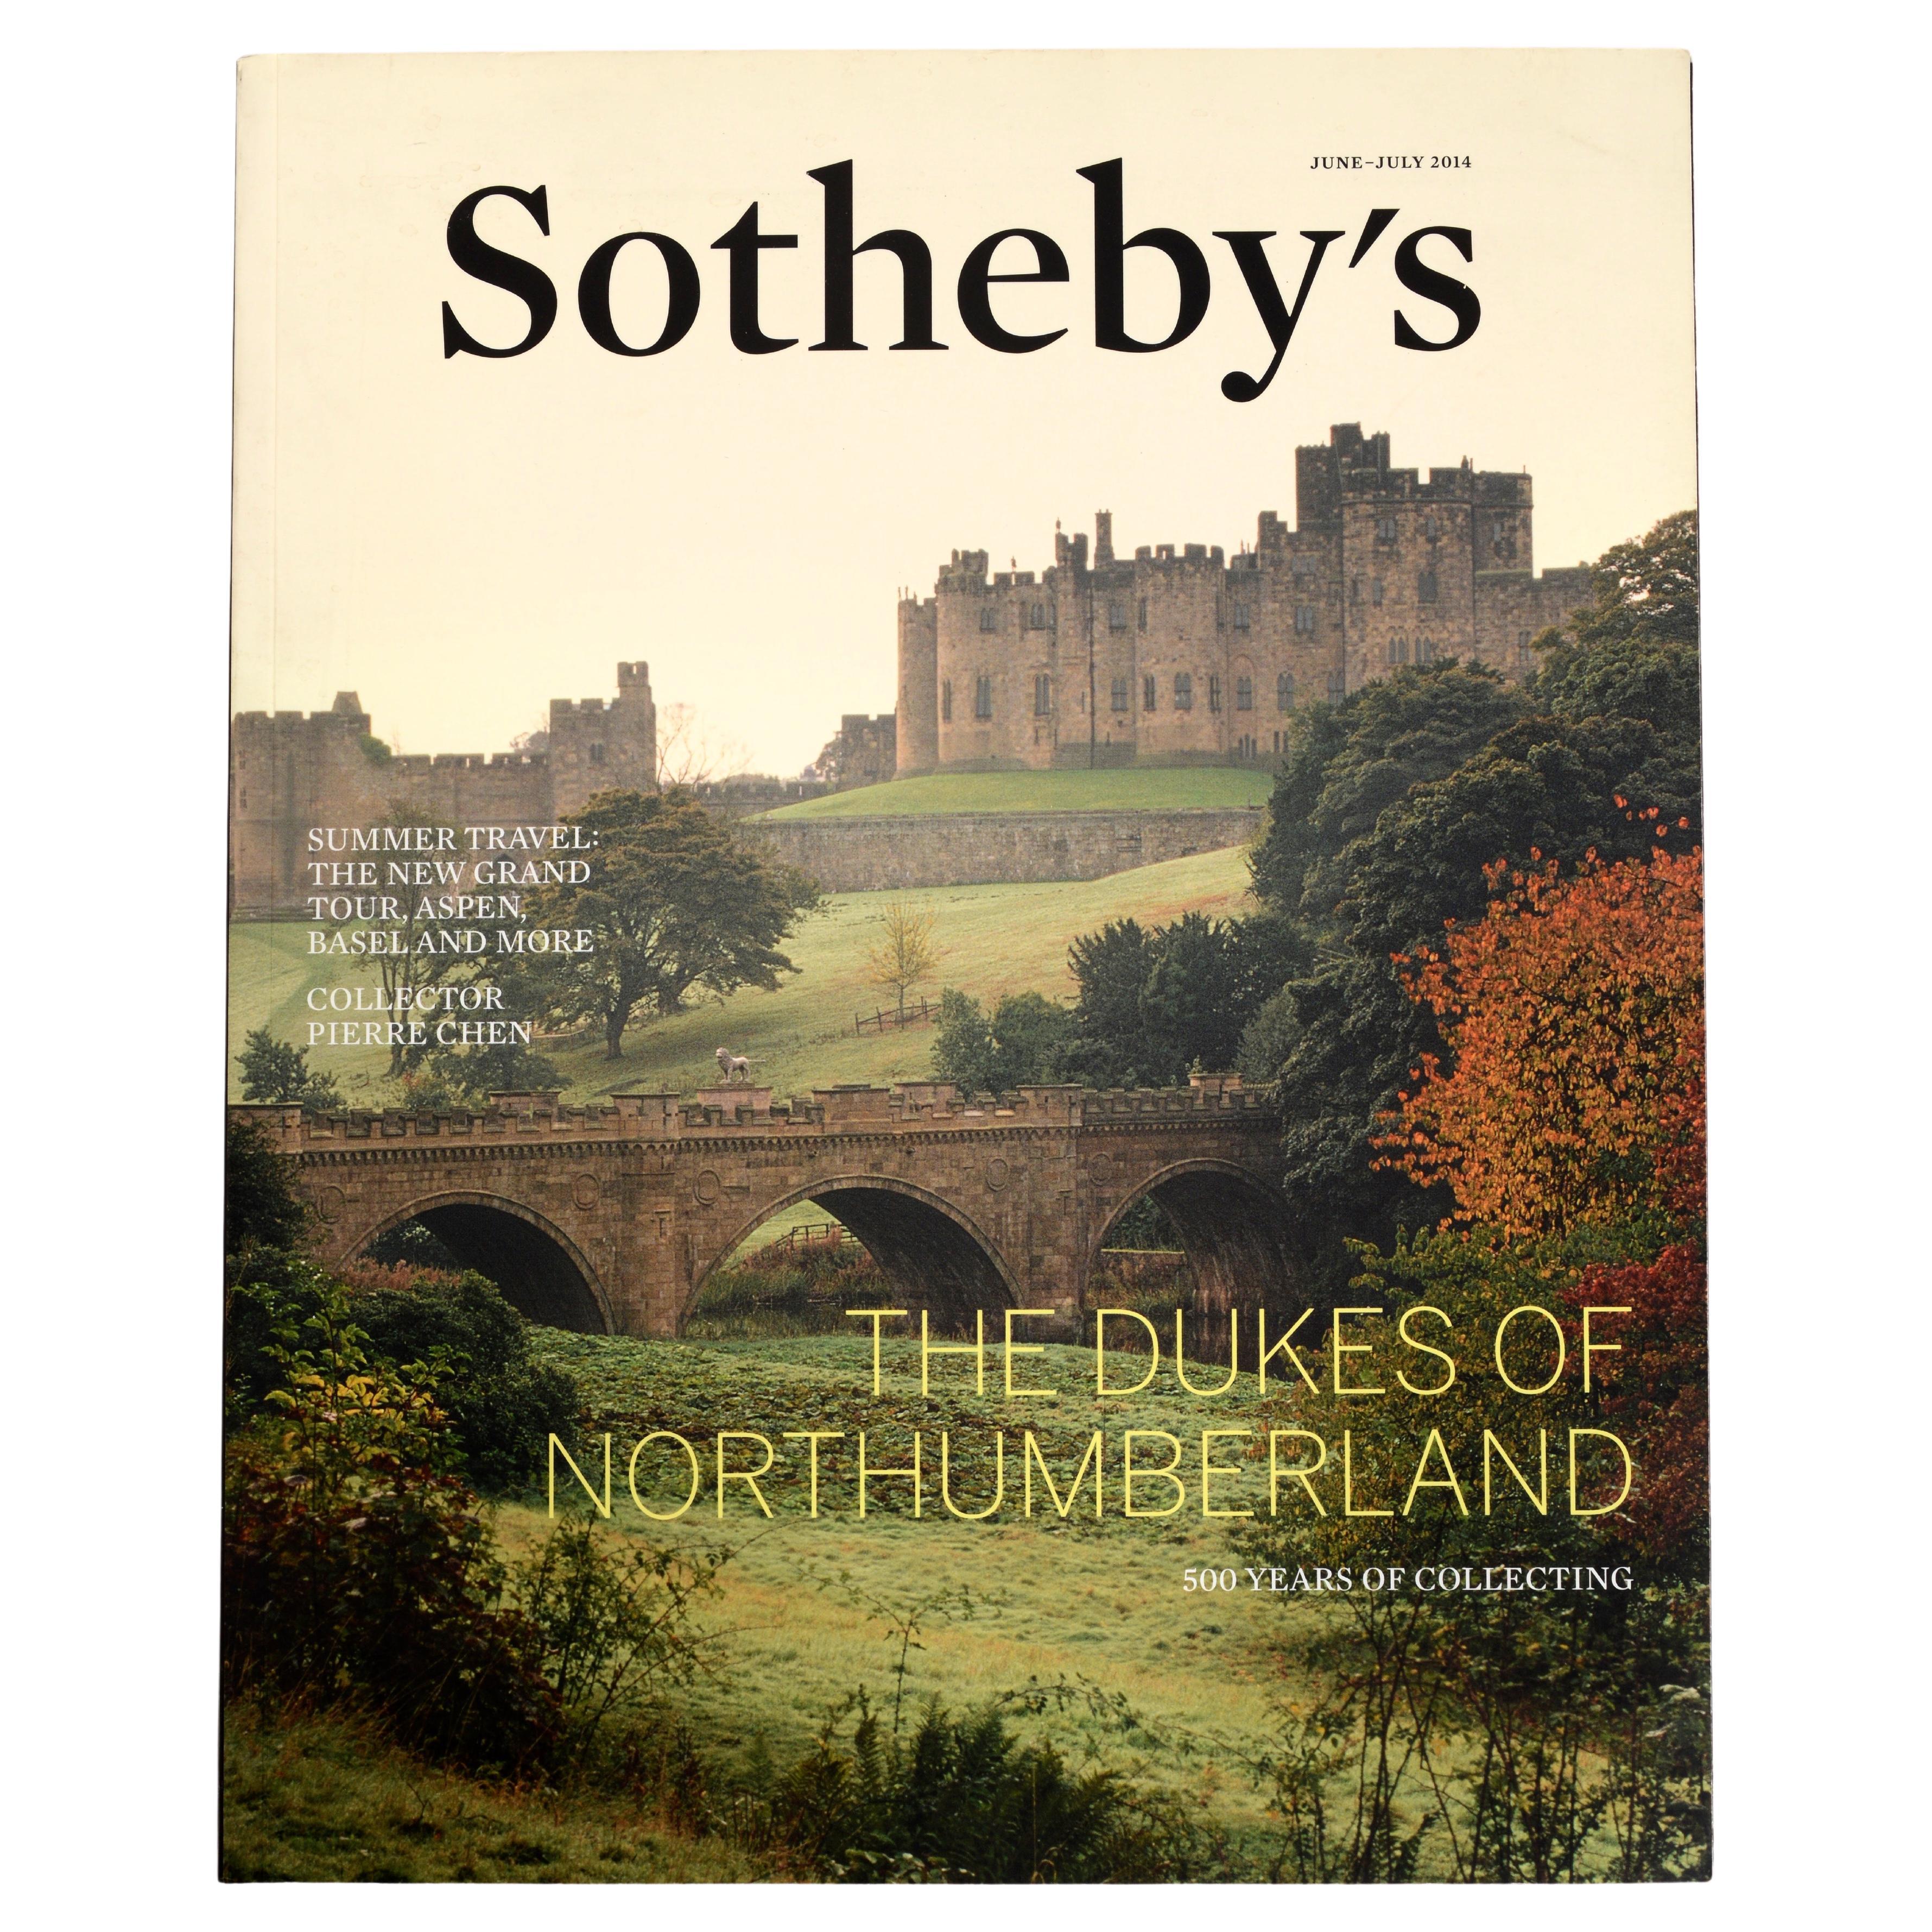 Sotheby's Summer Travel New Grand Tour, Aspen, Bâle et Dukes of Northumberland